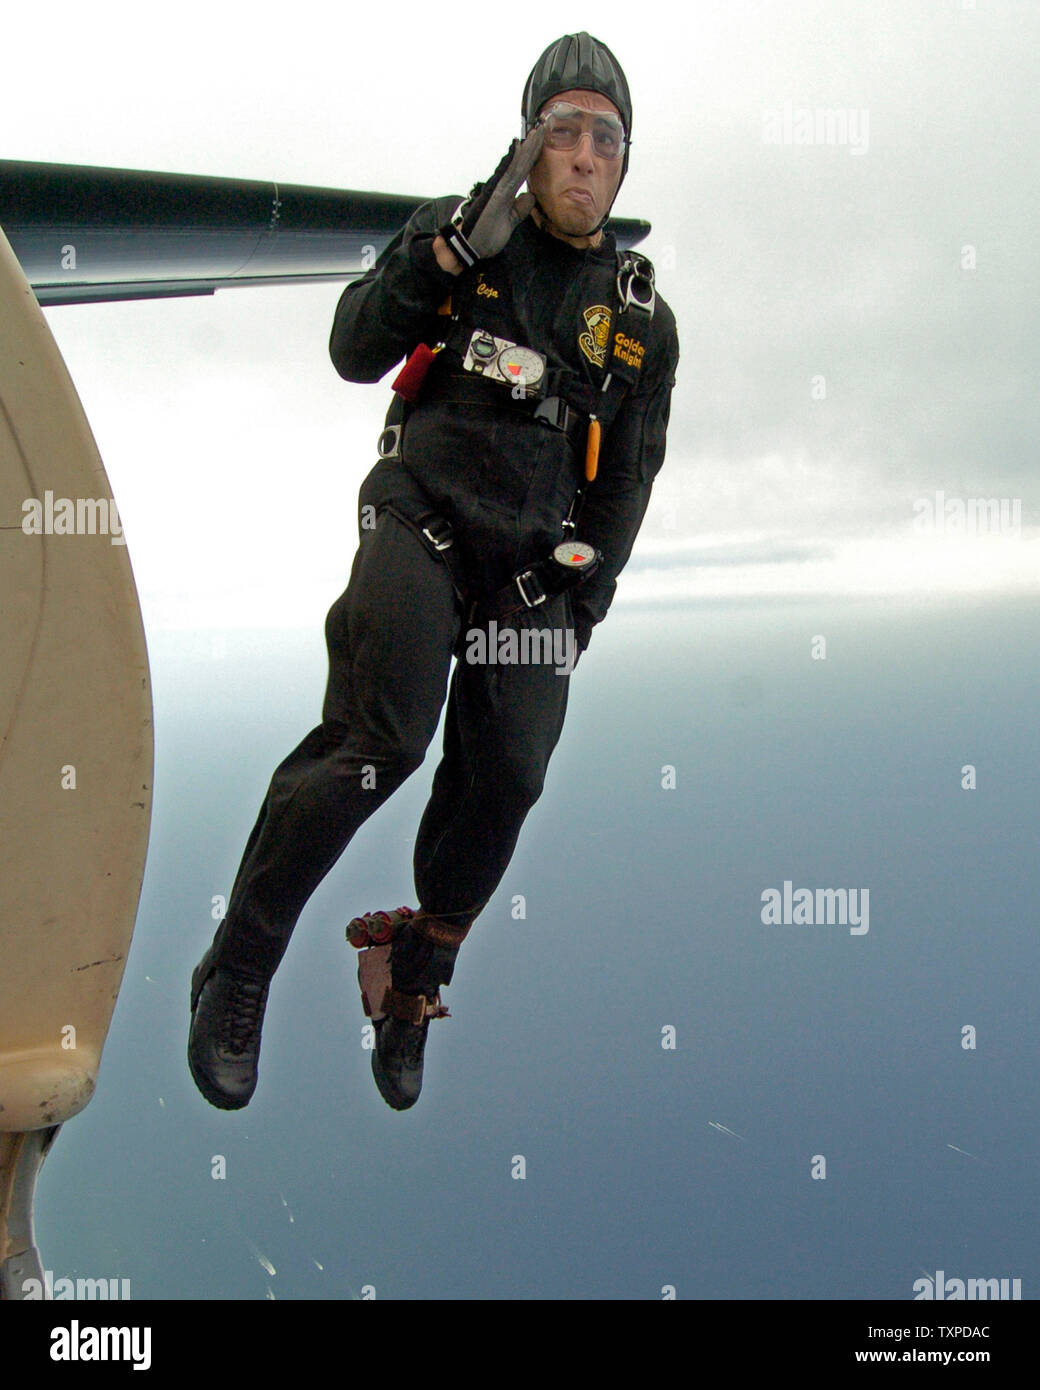 Membre de l'armée américaine Golden Knights parachute team, le 'Golden Knights', rend hommage comme il sort de l'avion au cours de la performance finale du McDonalds l'air et la mer Voir le 1er mai 2005 à Ft. Lauderdale, en Floride. (Photo d'UPI/Marino-Cantrell) Banque D'Images